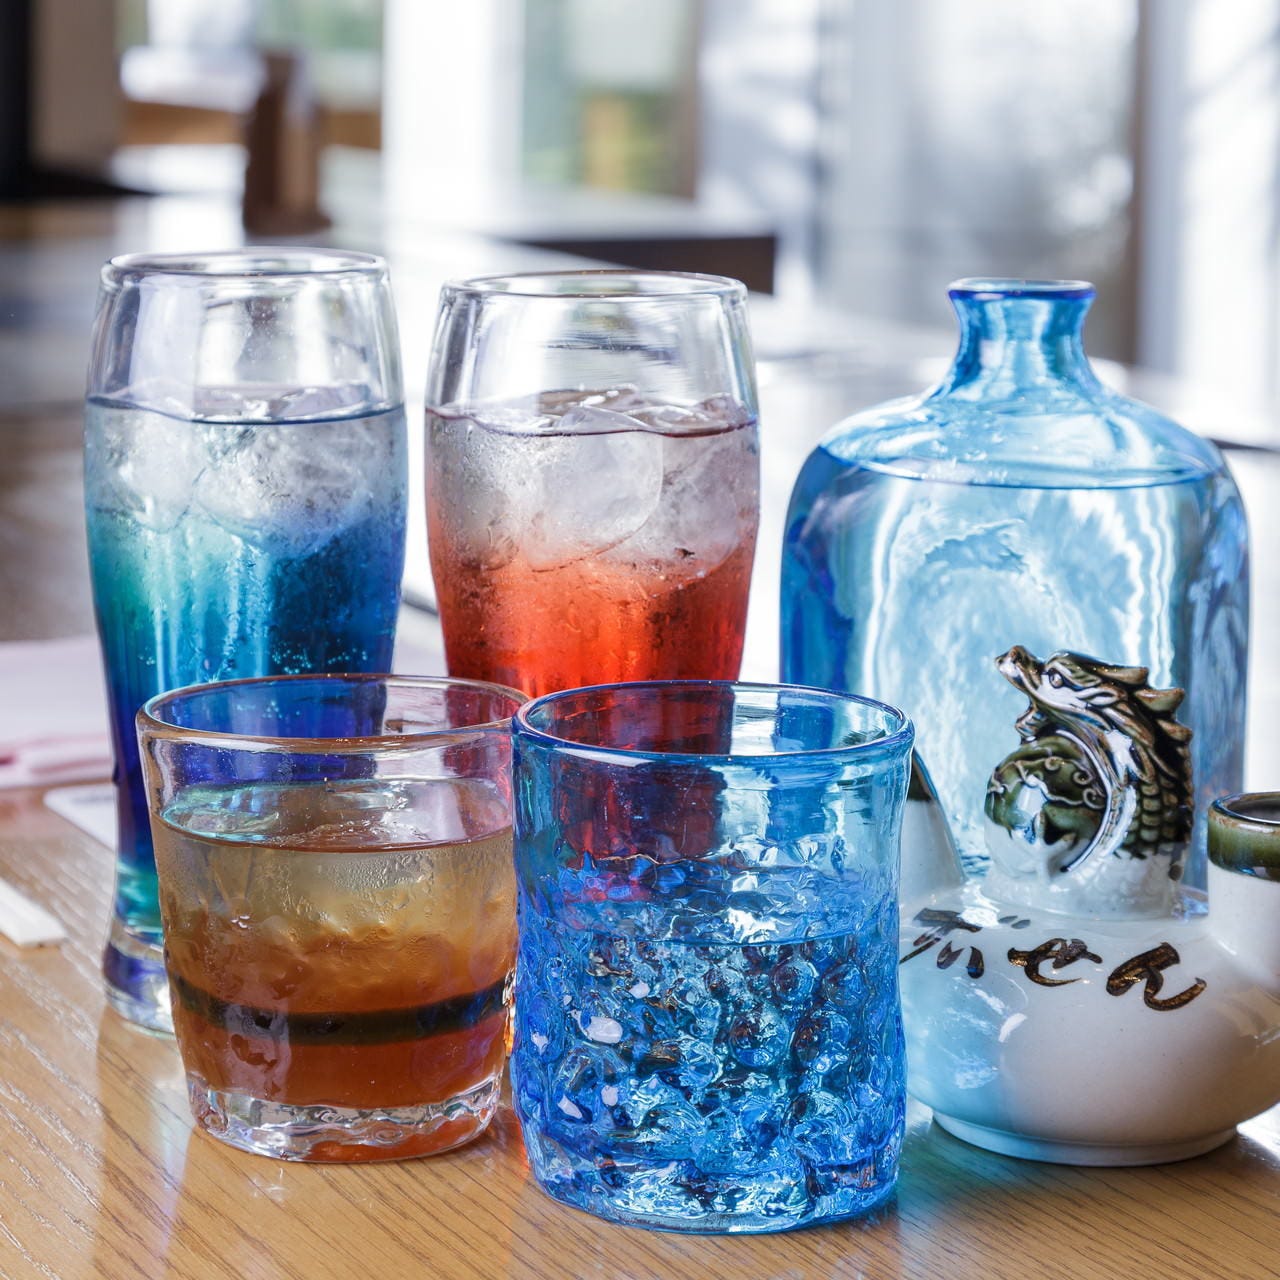 美しい琉球グラスで豊富な沖縄ドリンクをお楽しみください